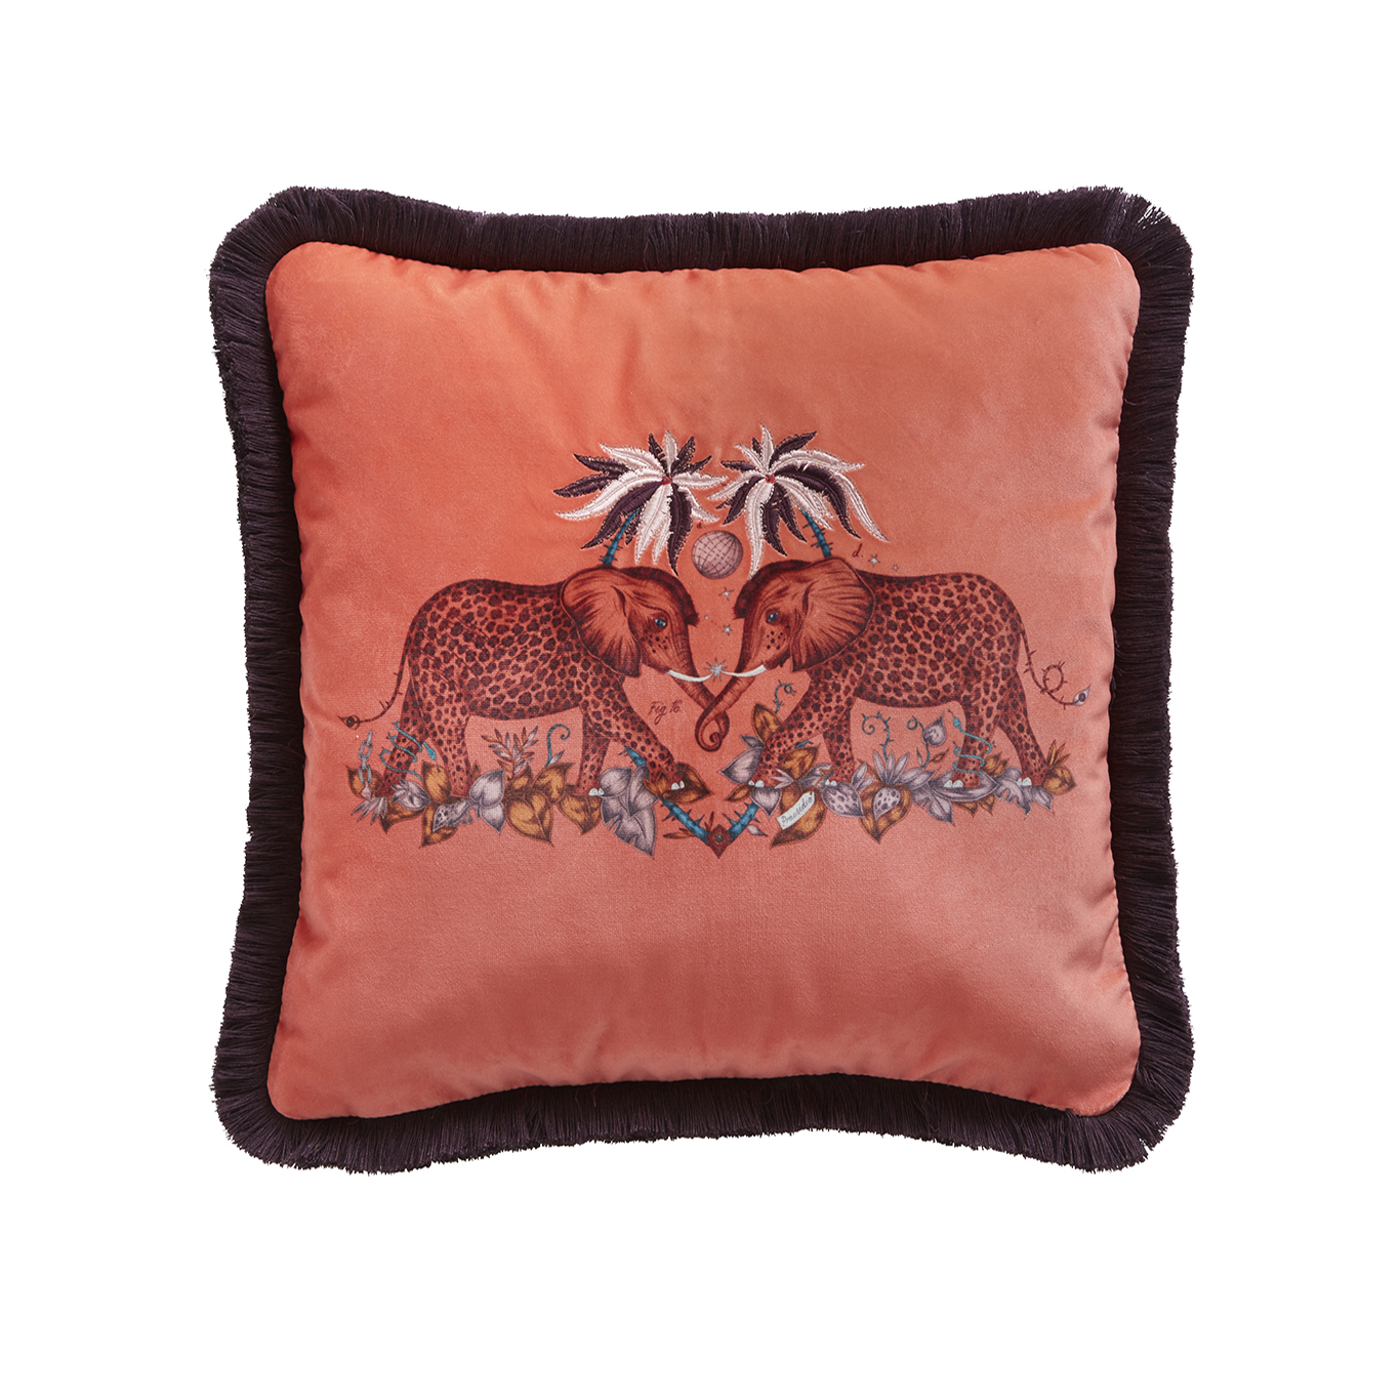 Zambezi 43x43 Square Cushion Flame Bedding by CNC